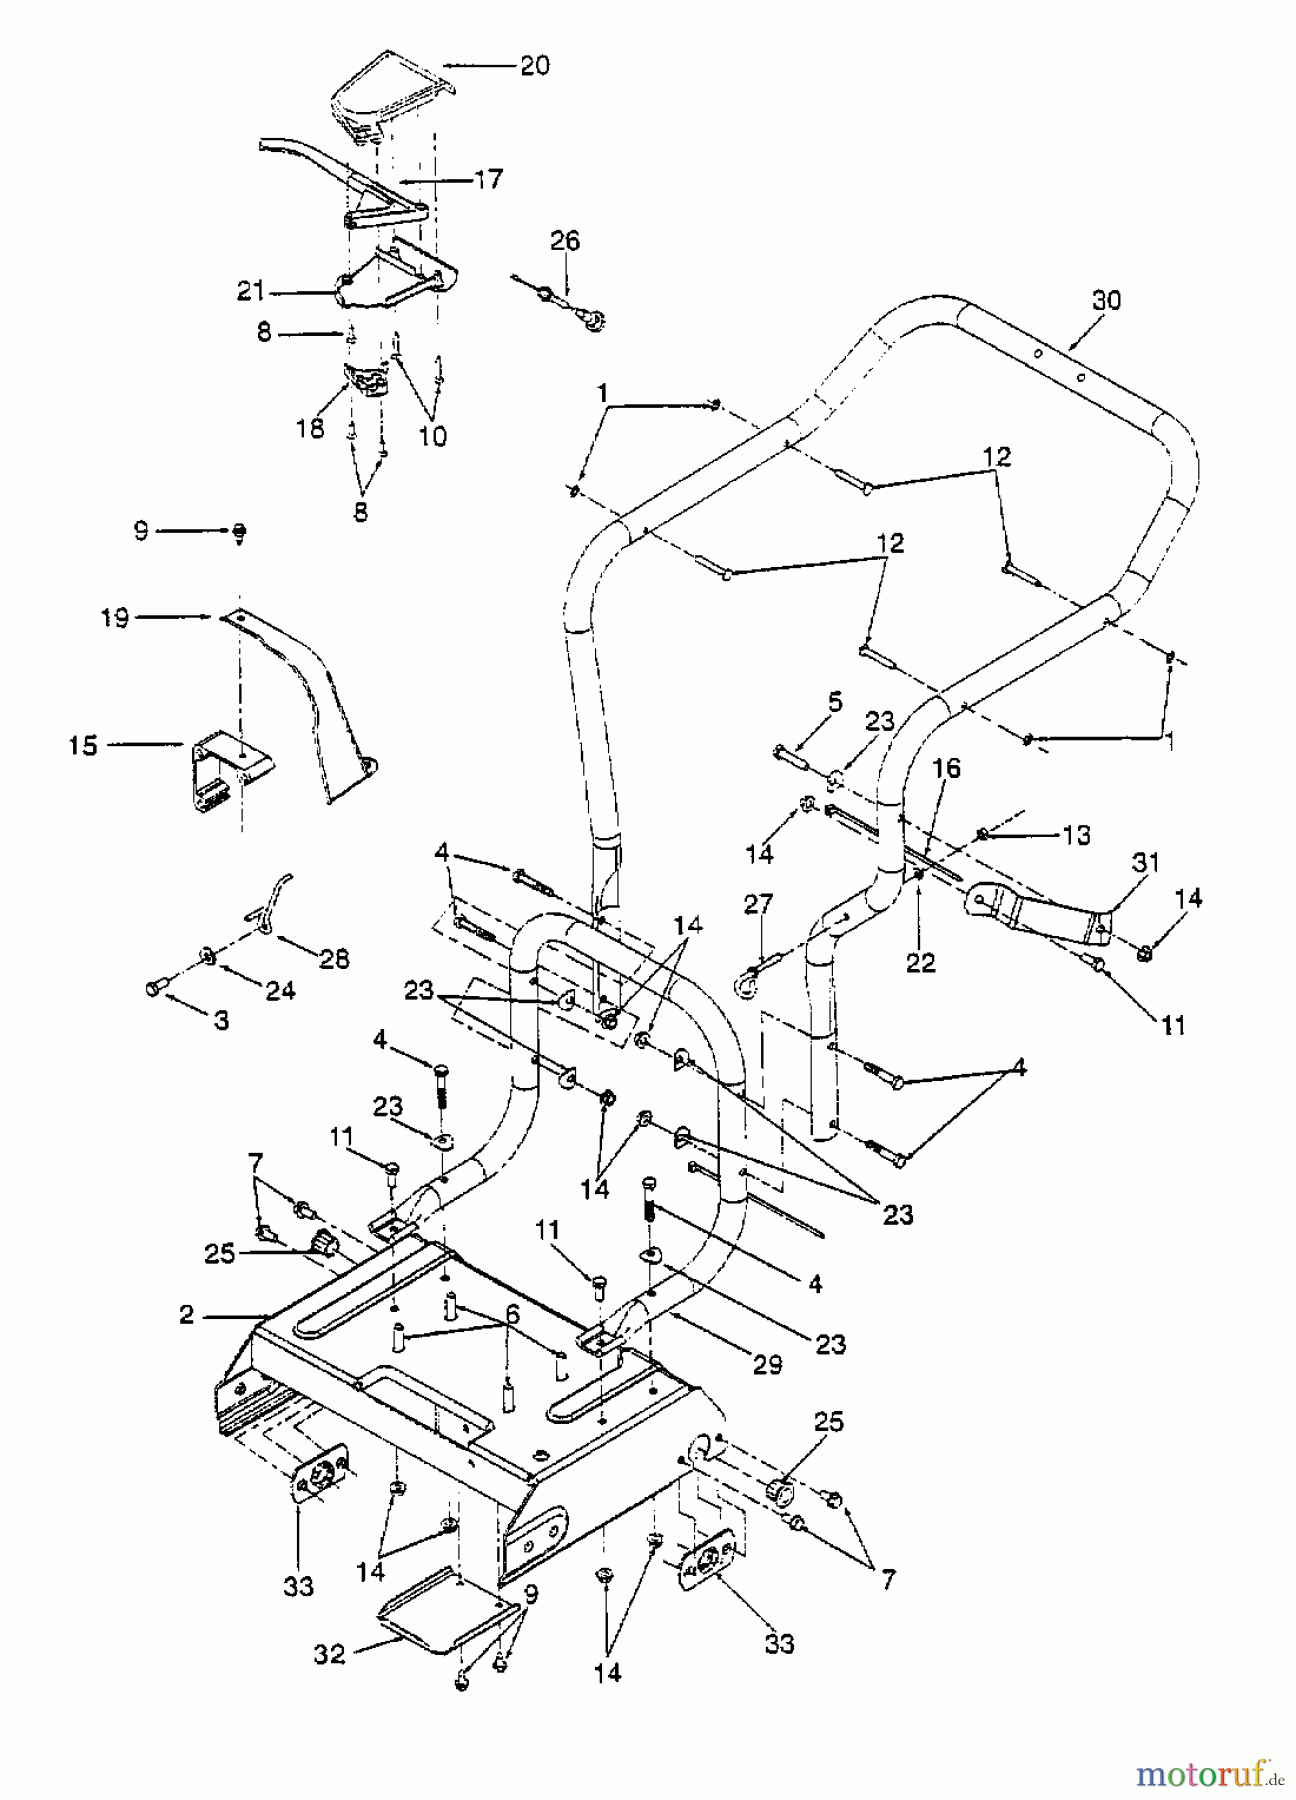  Gutbrod Leaf blower, Blower vac 202 24A-202B604  (1999) Handle